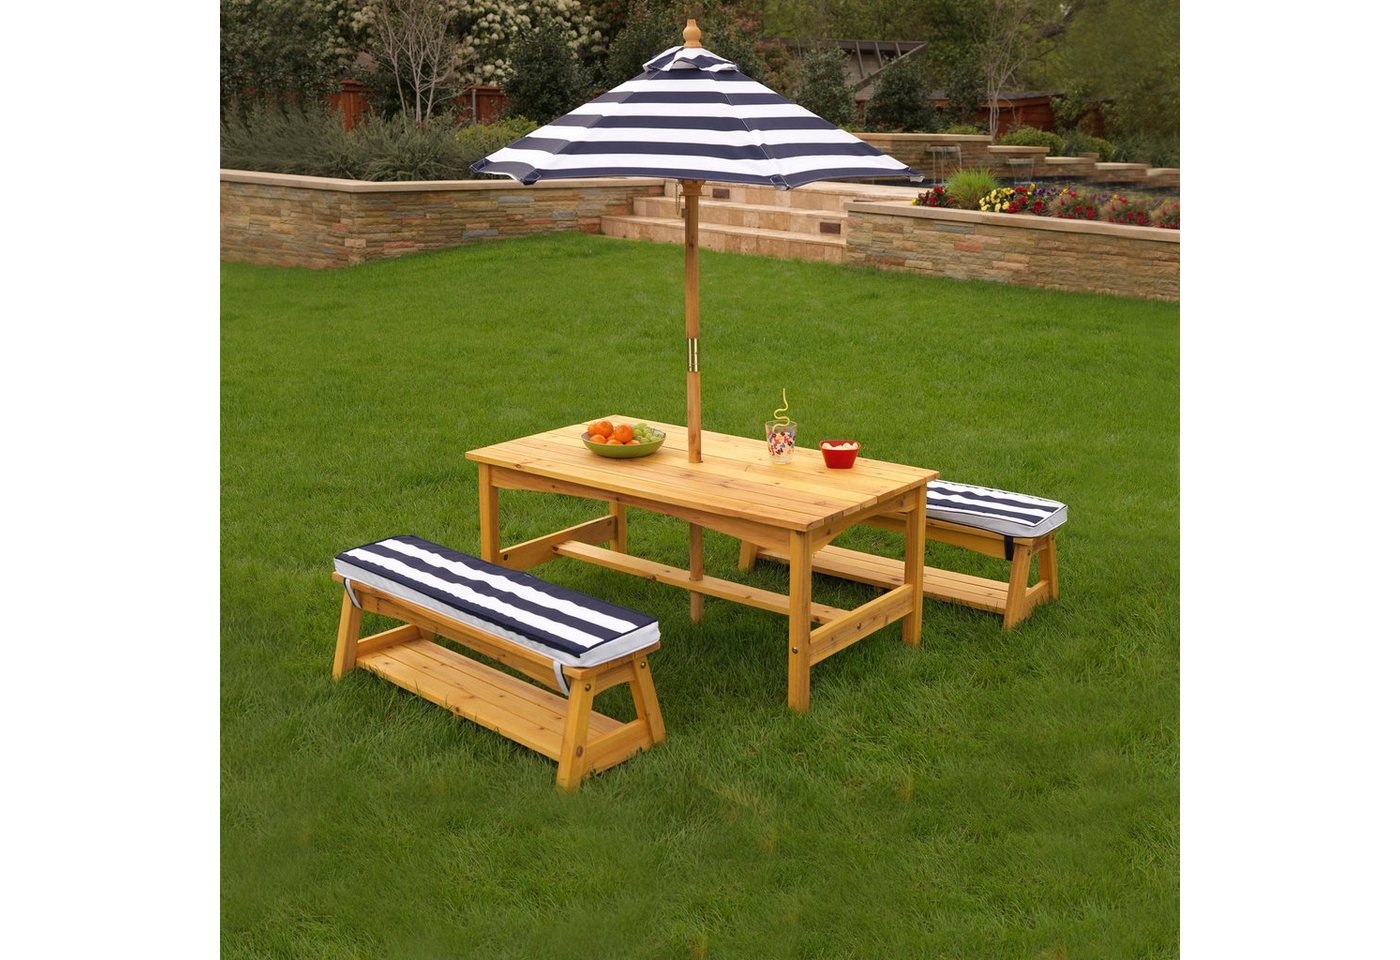 KidKraft® Kindersitzgruppe »Gartentischset hellbraun«, mit Sitzauflagen und Sonnenschirm, marineblau-weiß gestreift-HomeTrends